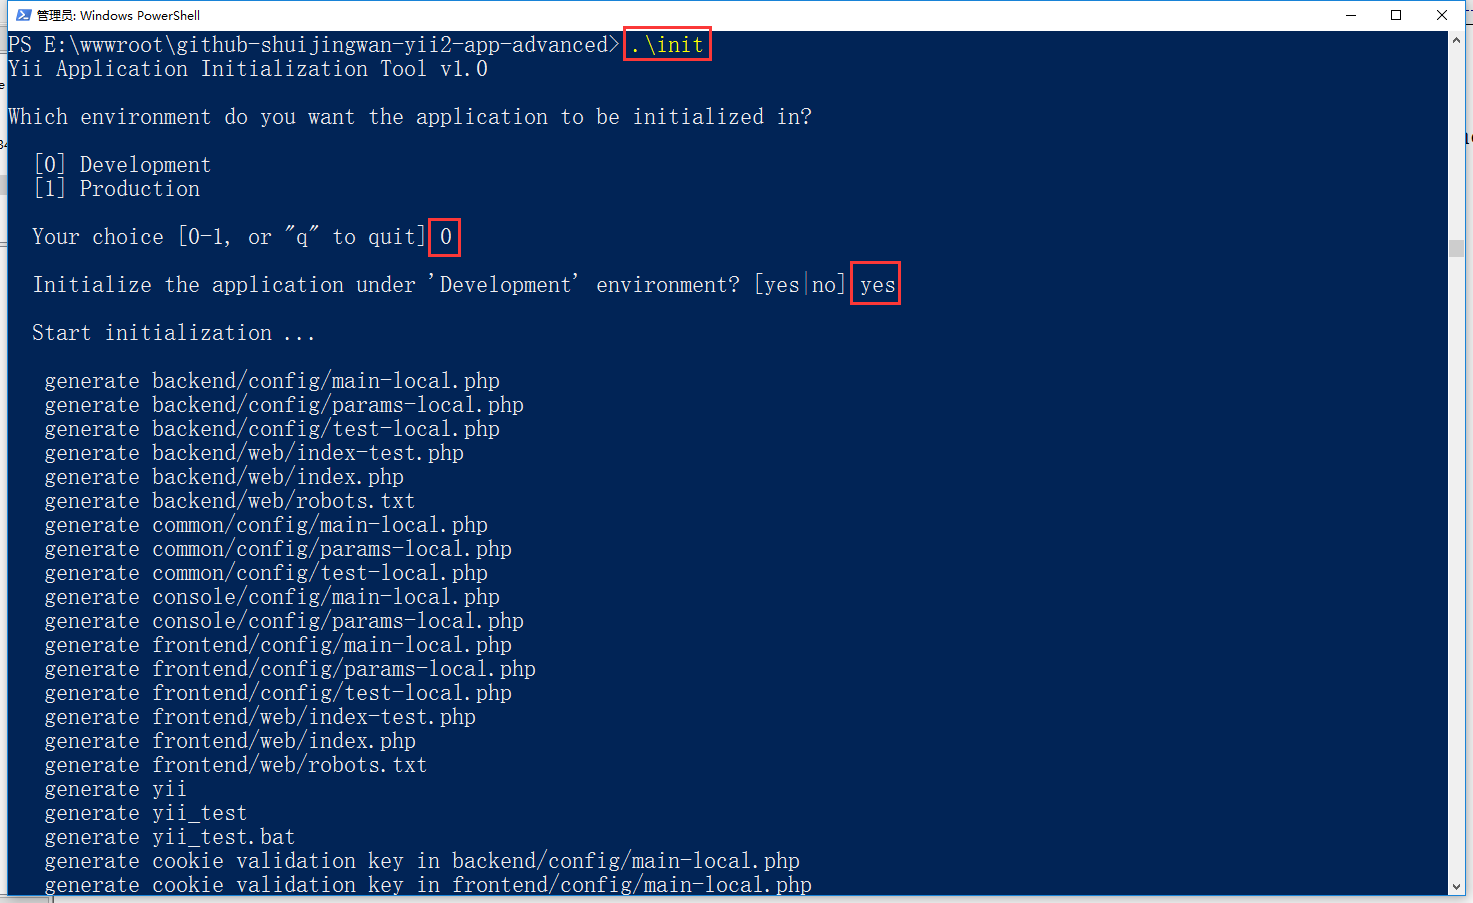 打开 Windows PowerShell，执行 init 命令并选择 dev 作为环境